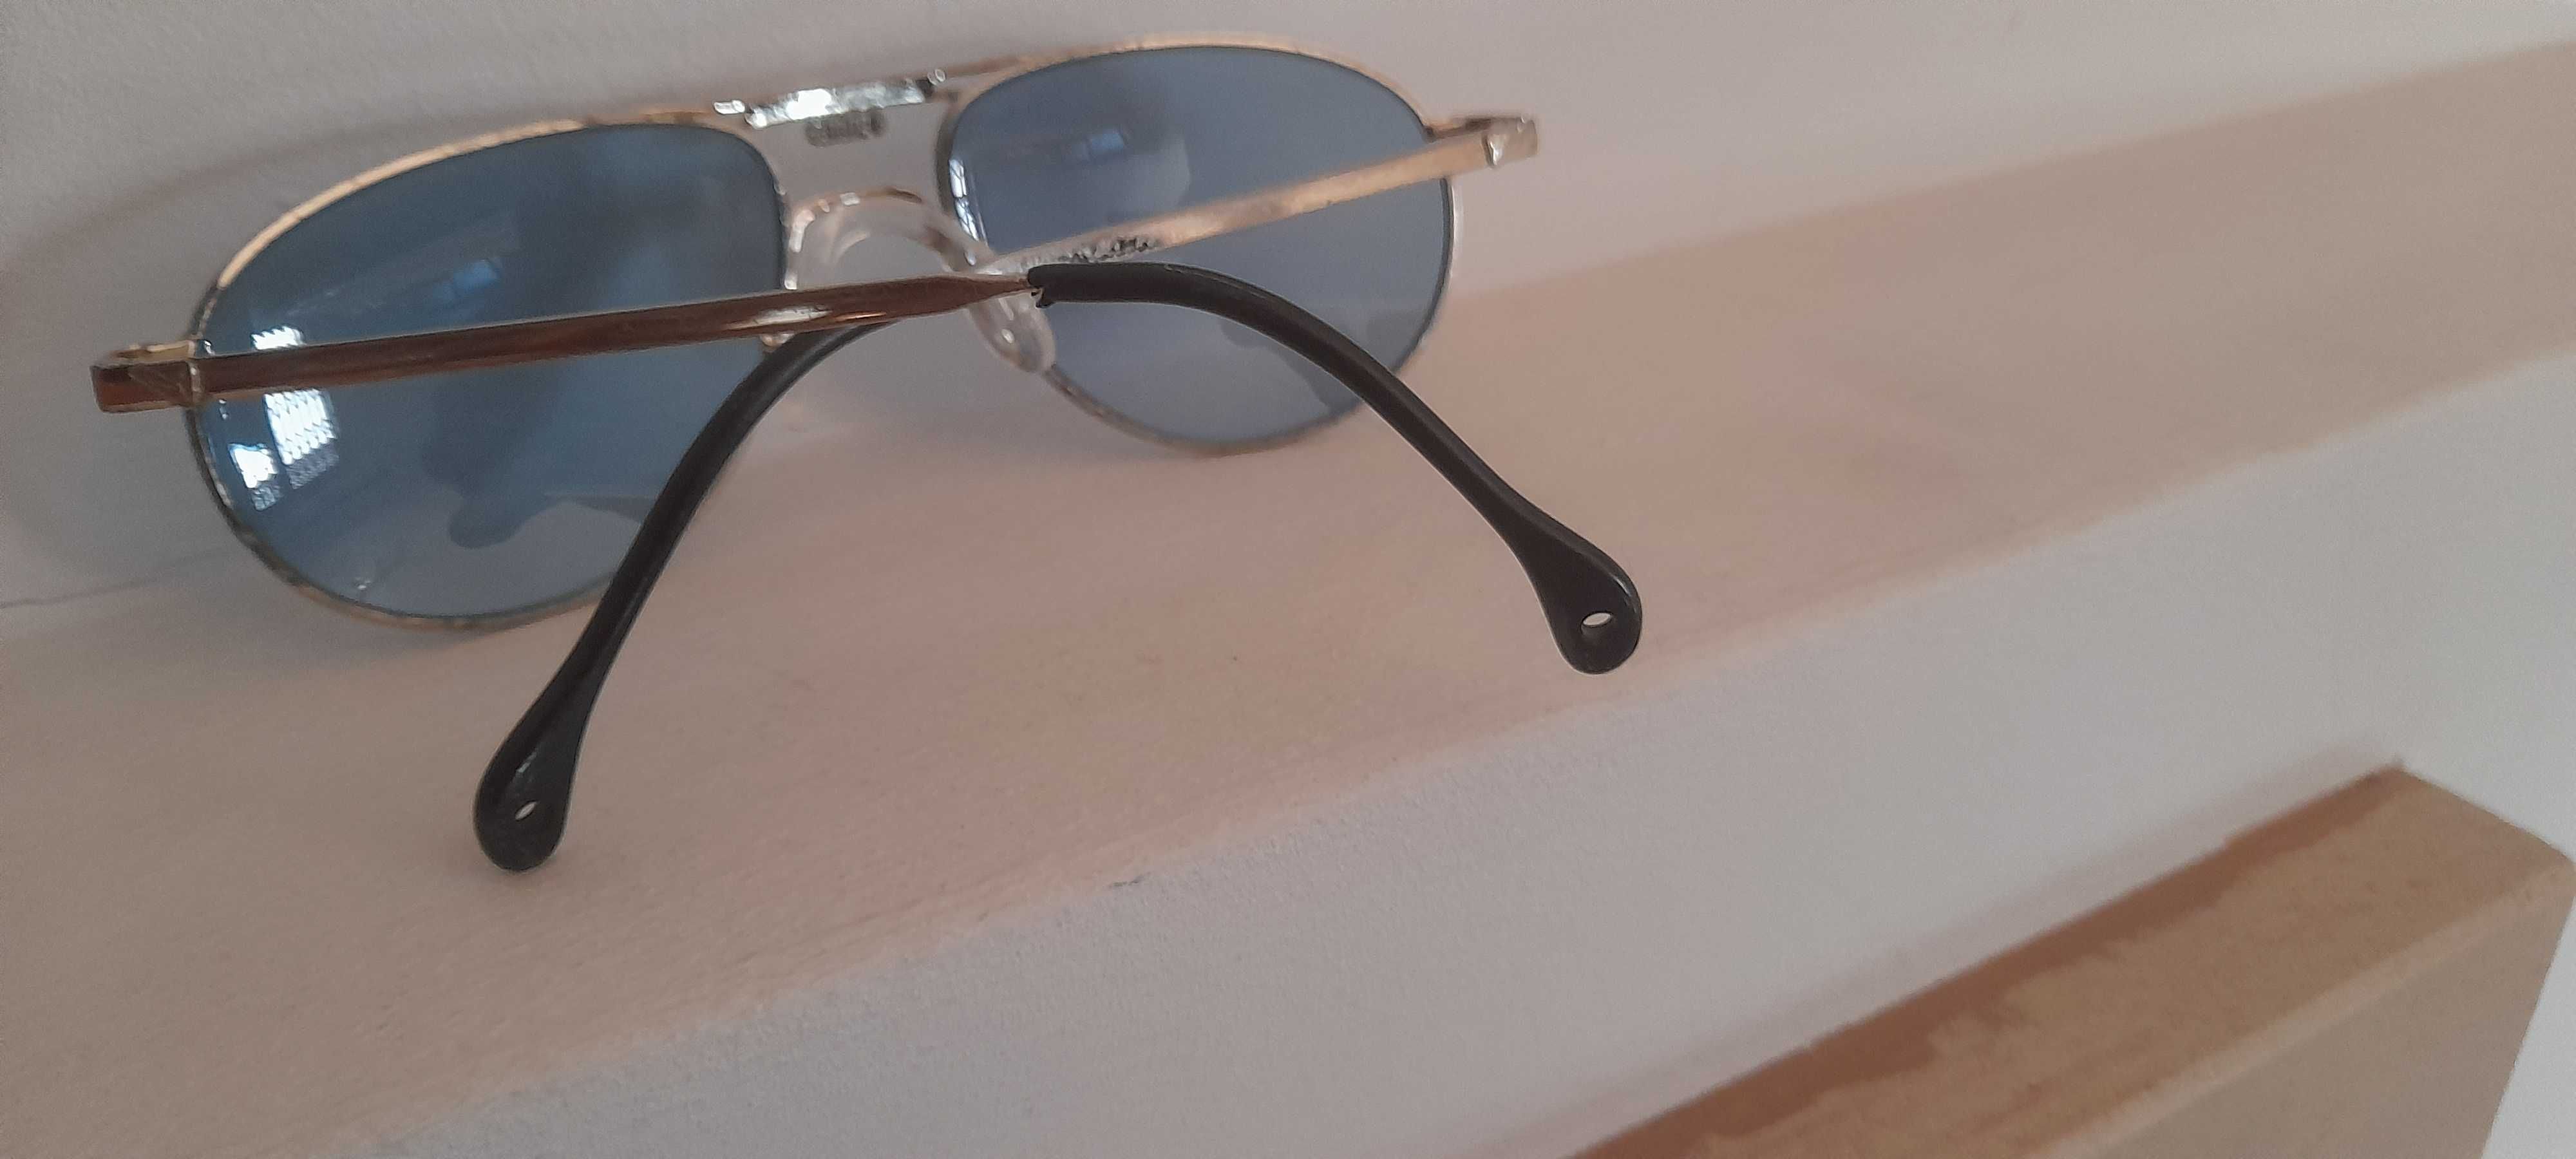 Puma - oculos sol retro metal lentes azuis